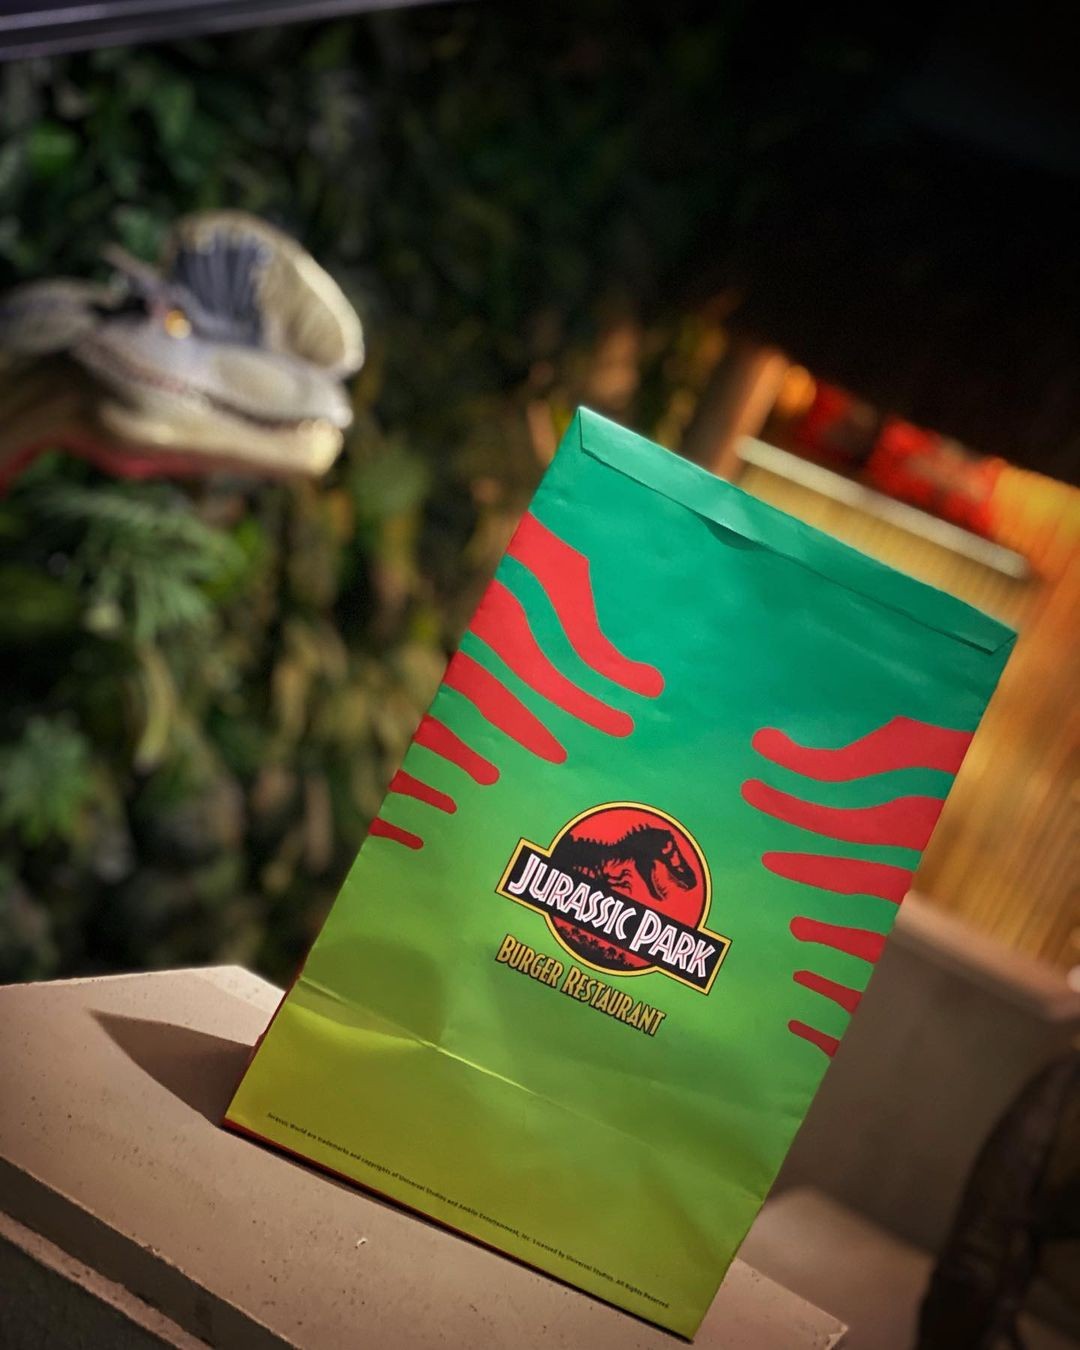 São Paulo terá hamburgueria temática inspirada em Jurassic Park (Foto: Reprodução/ Instagram)